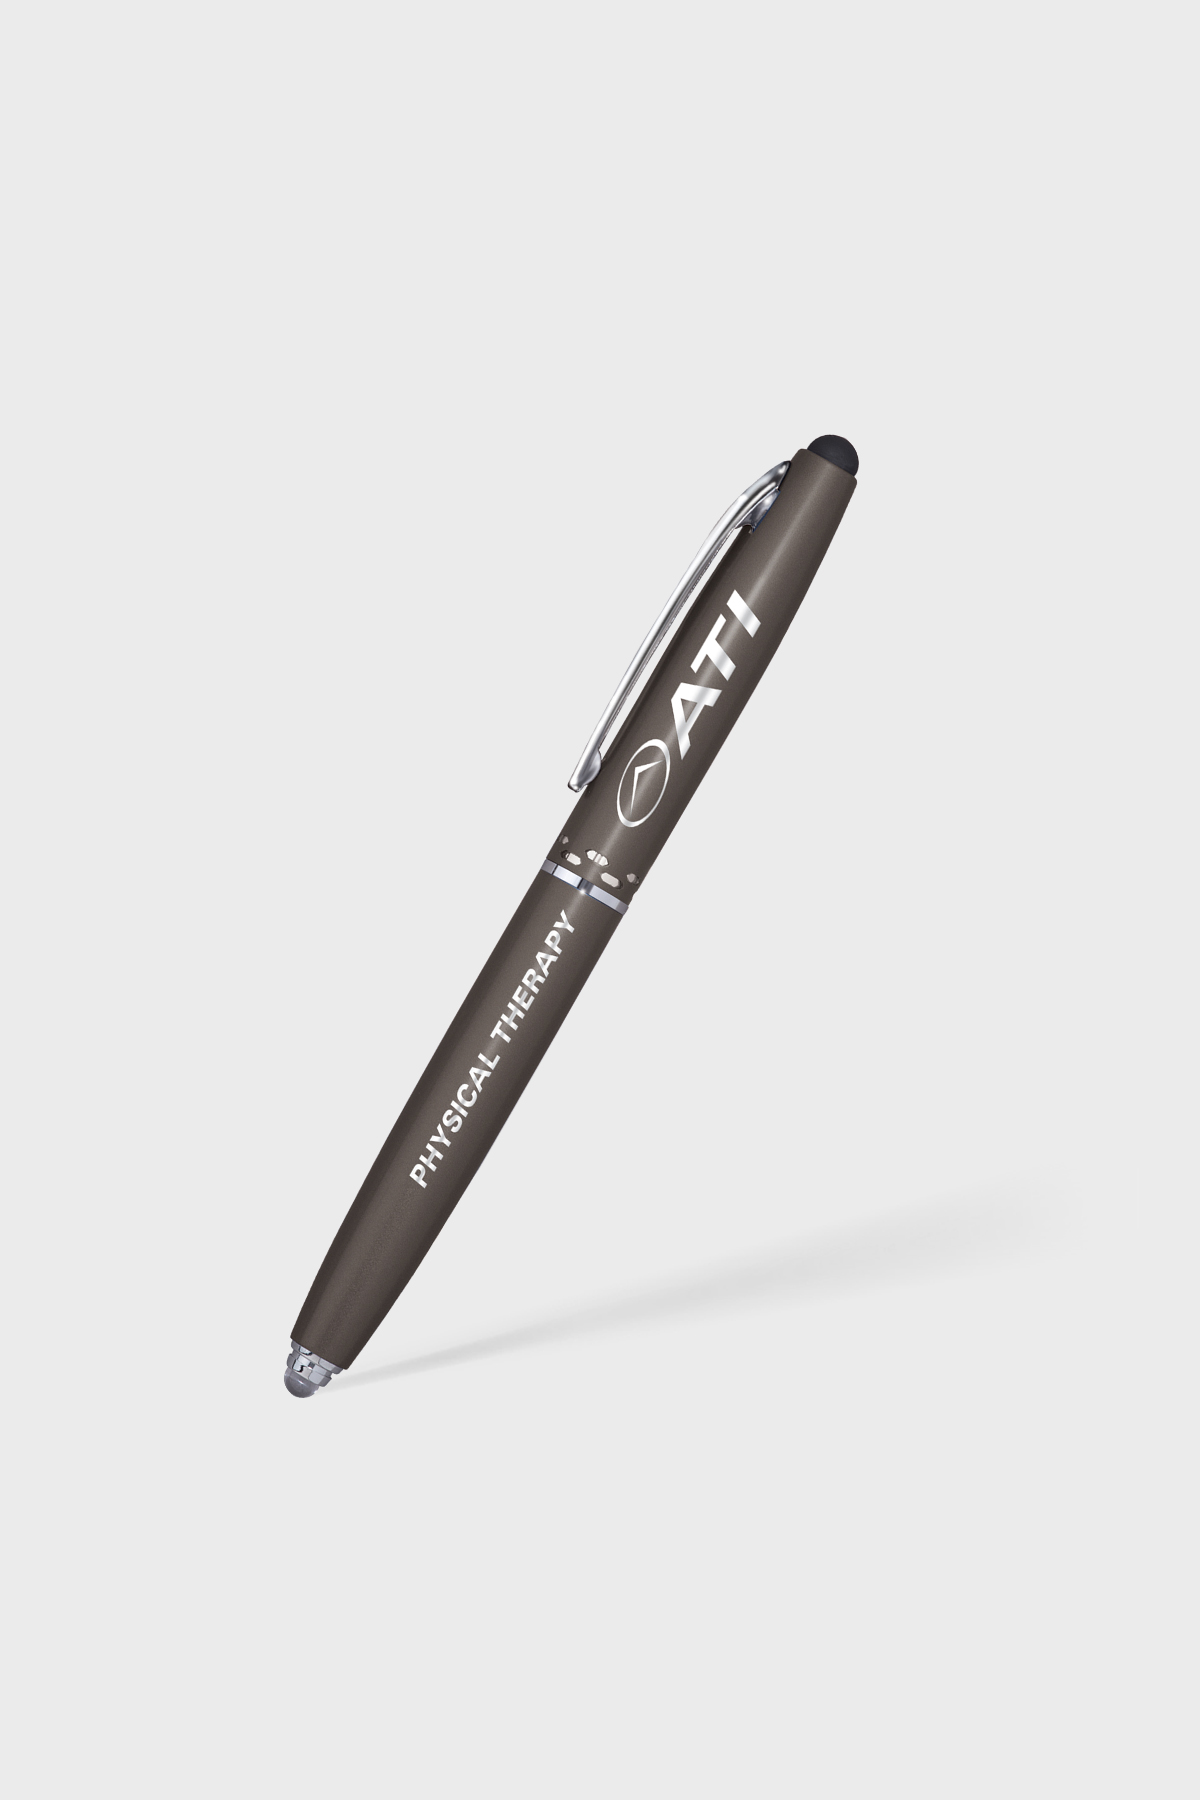  ABOOFAN 4pcs Signing Pen Note Taking Pen Customer